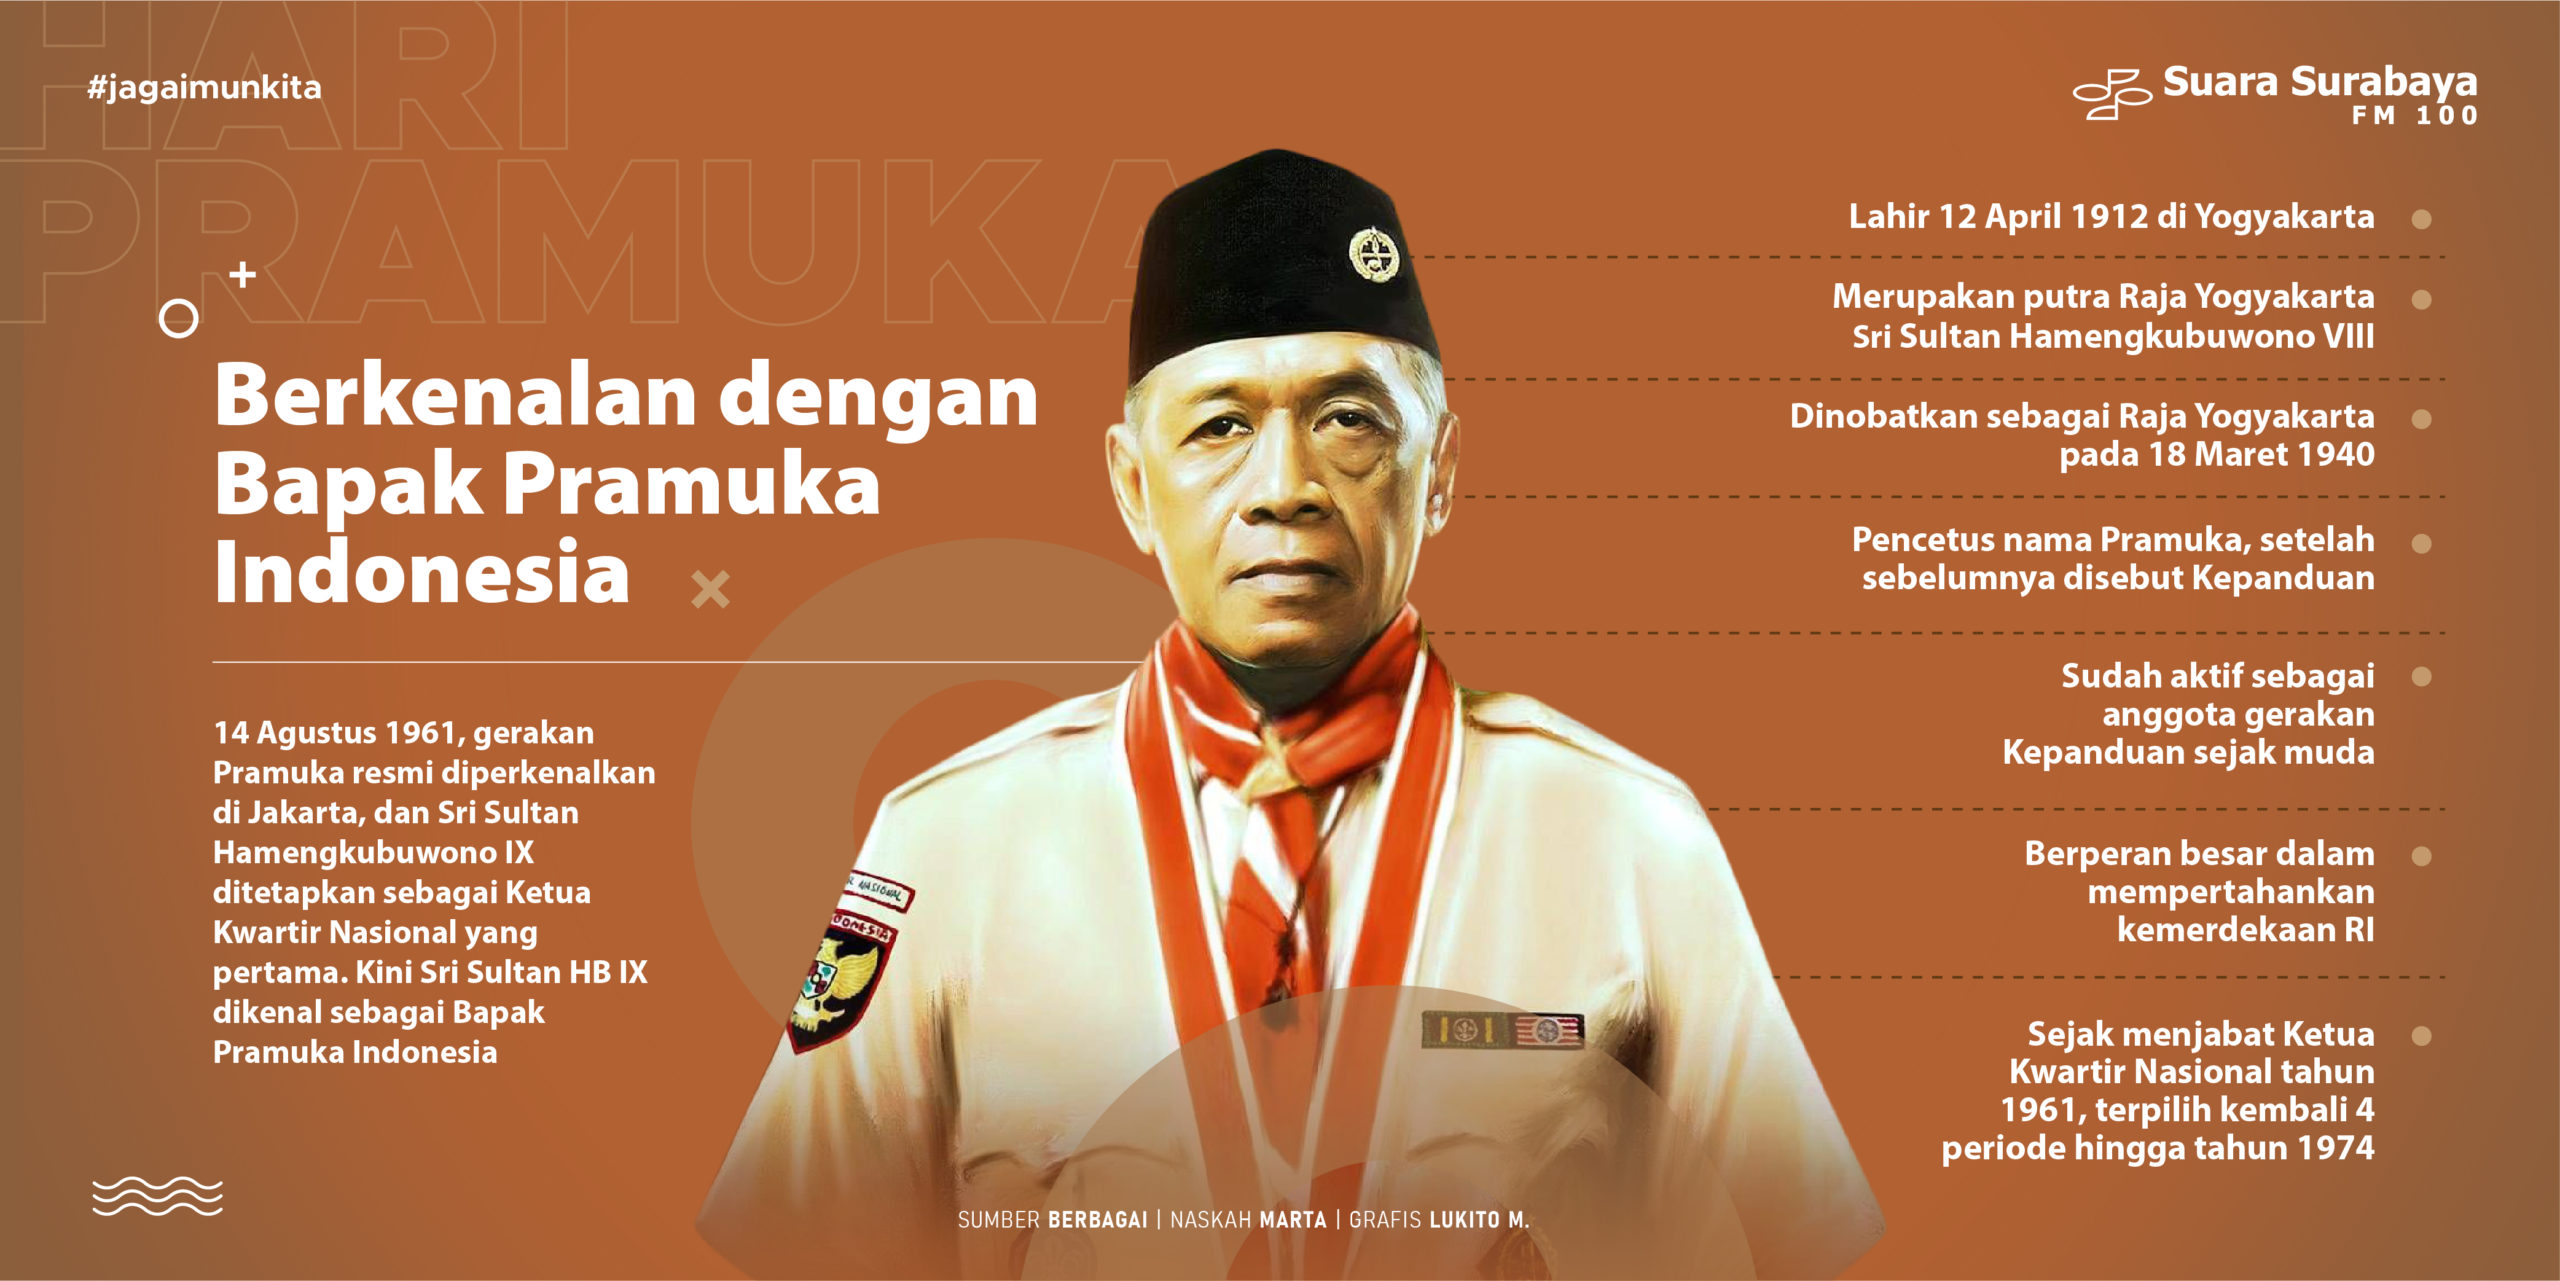 Siapa Bapak Pramuka Indonesia?